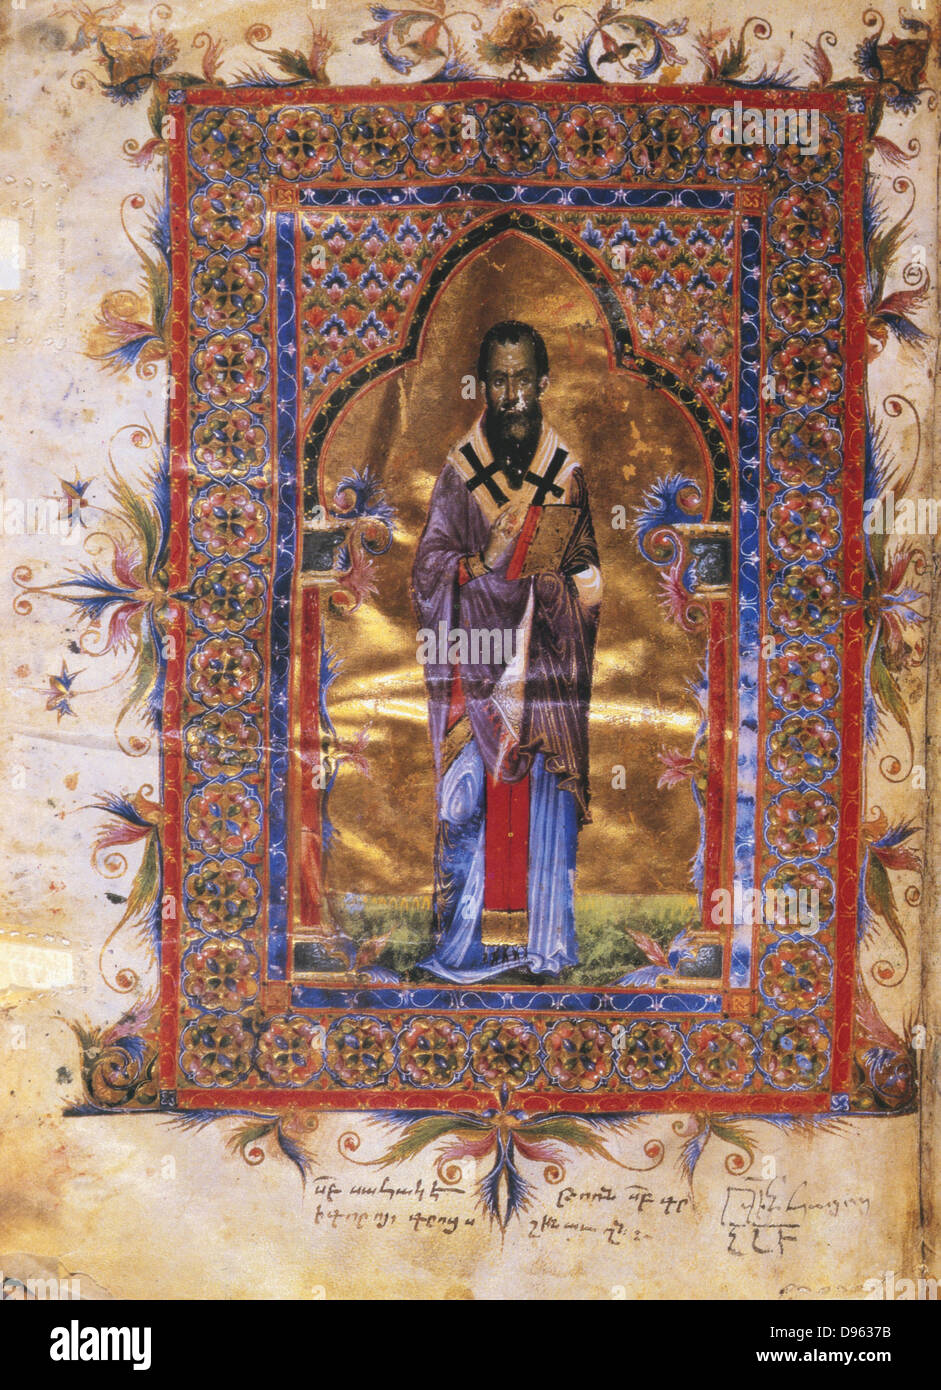 Der hl. Basilius der Große (329-379), einer der größten griechischen Väter der christlichen Kirche. Bischof von Cäsarea von 370. Armenische Manuskript von 1286. Stockfoto